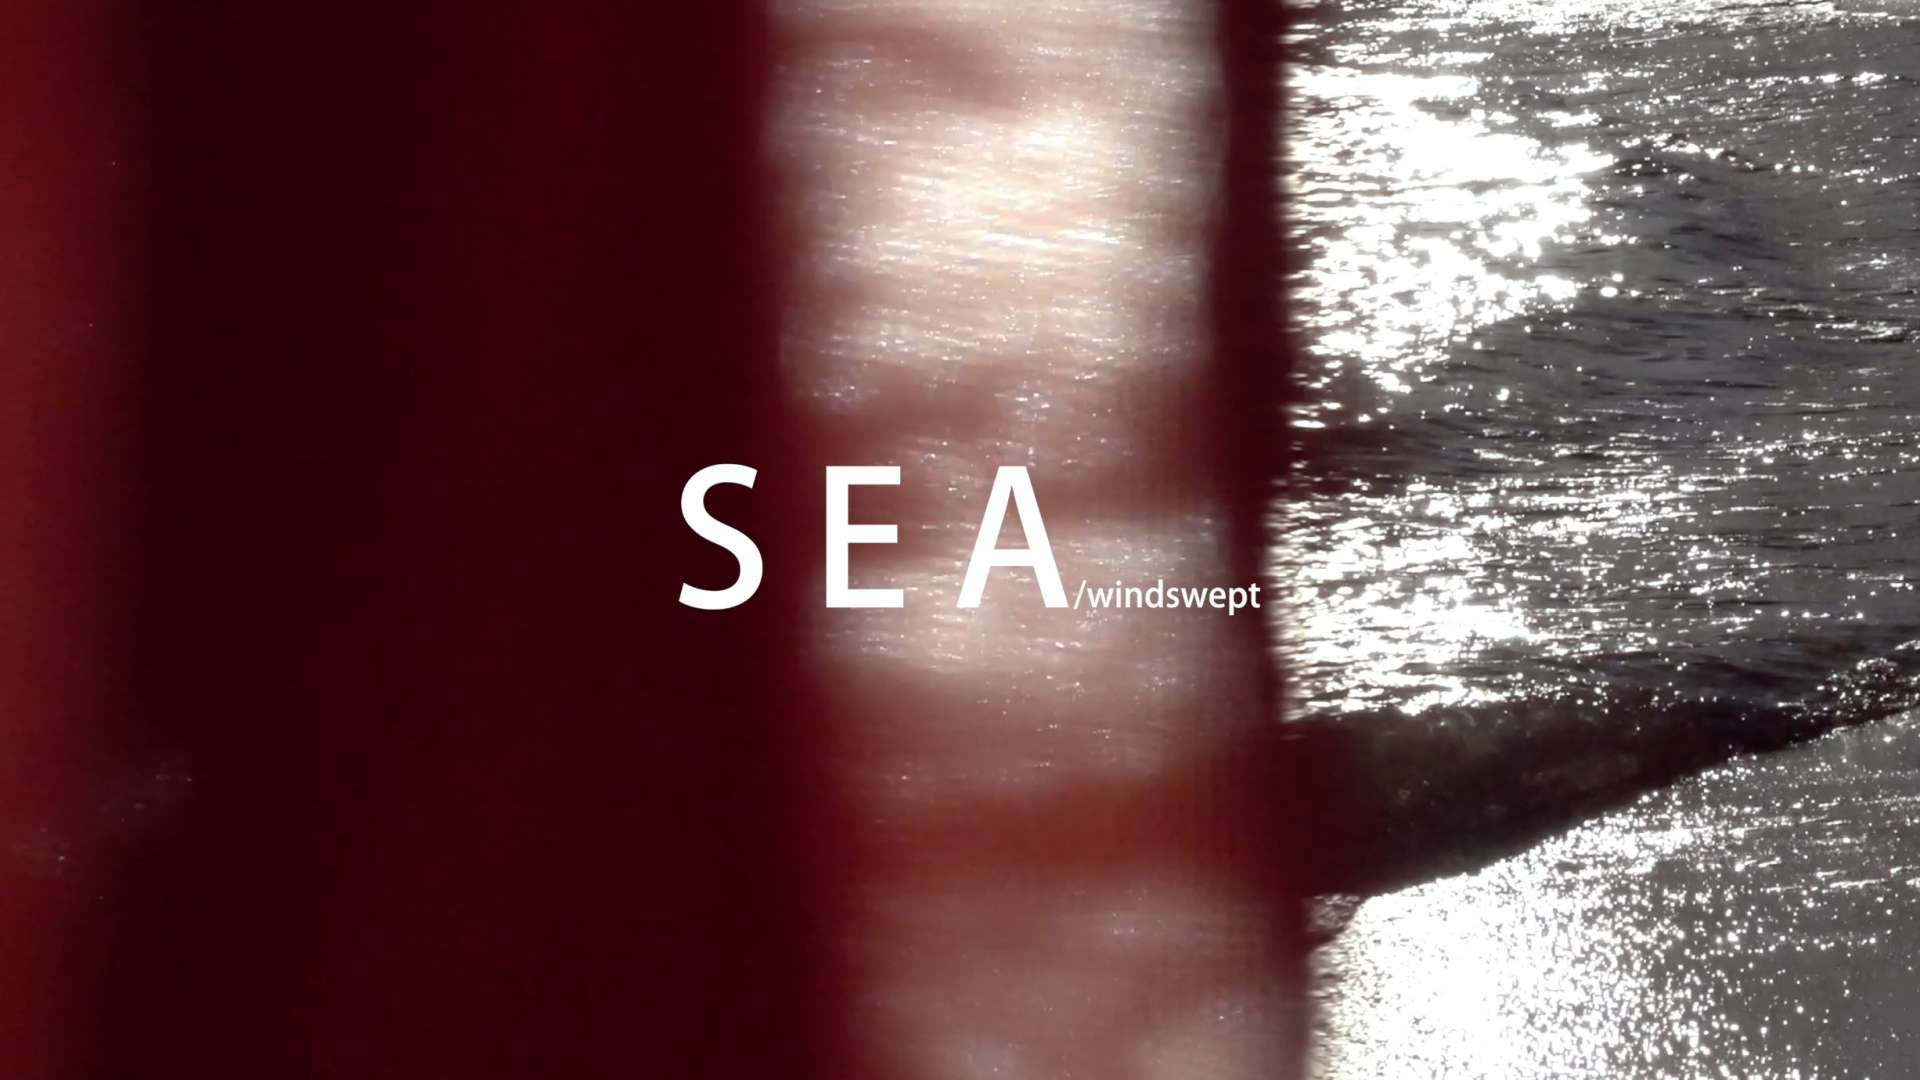 视觉短片 《海-随风摆动的》SEA-windswept